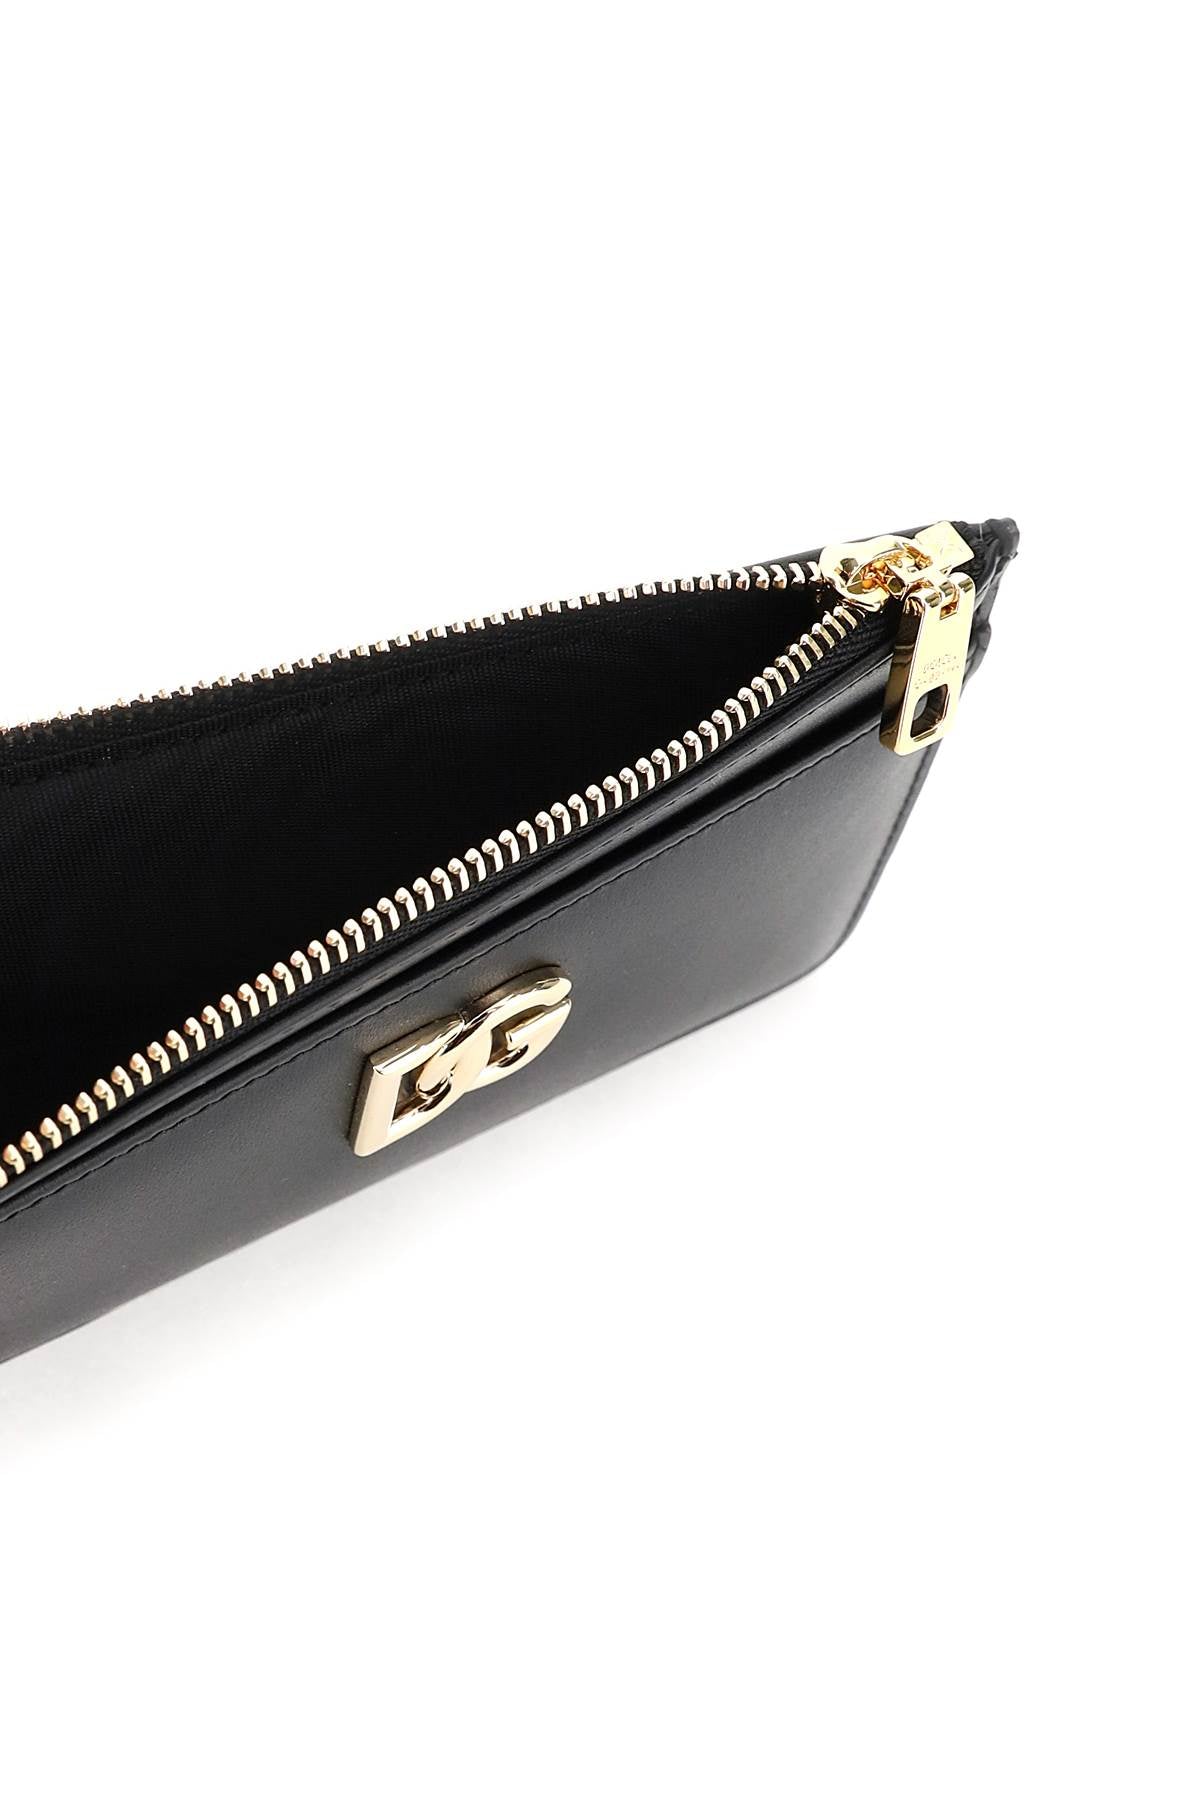 Dolce & Gabbana Dg Zippered Cardholder   Black